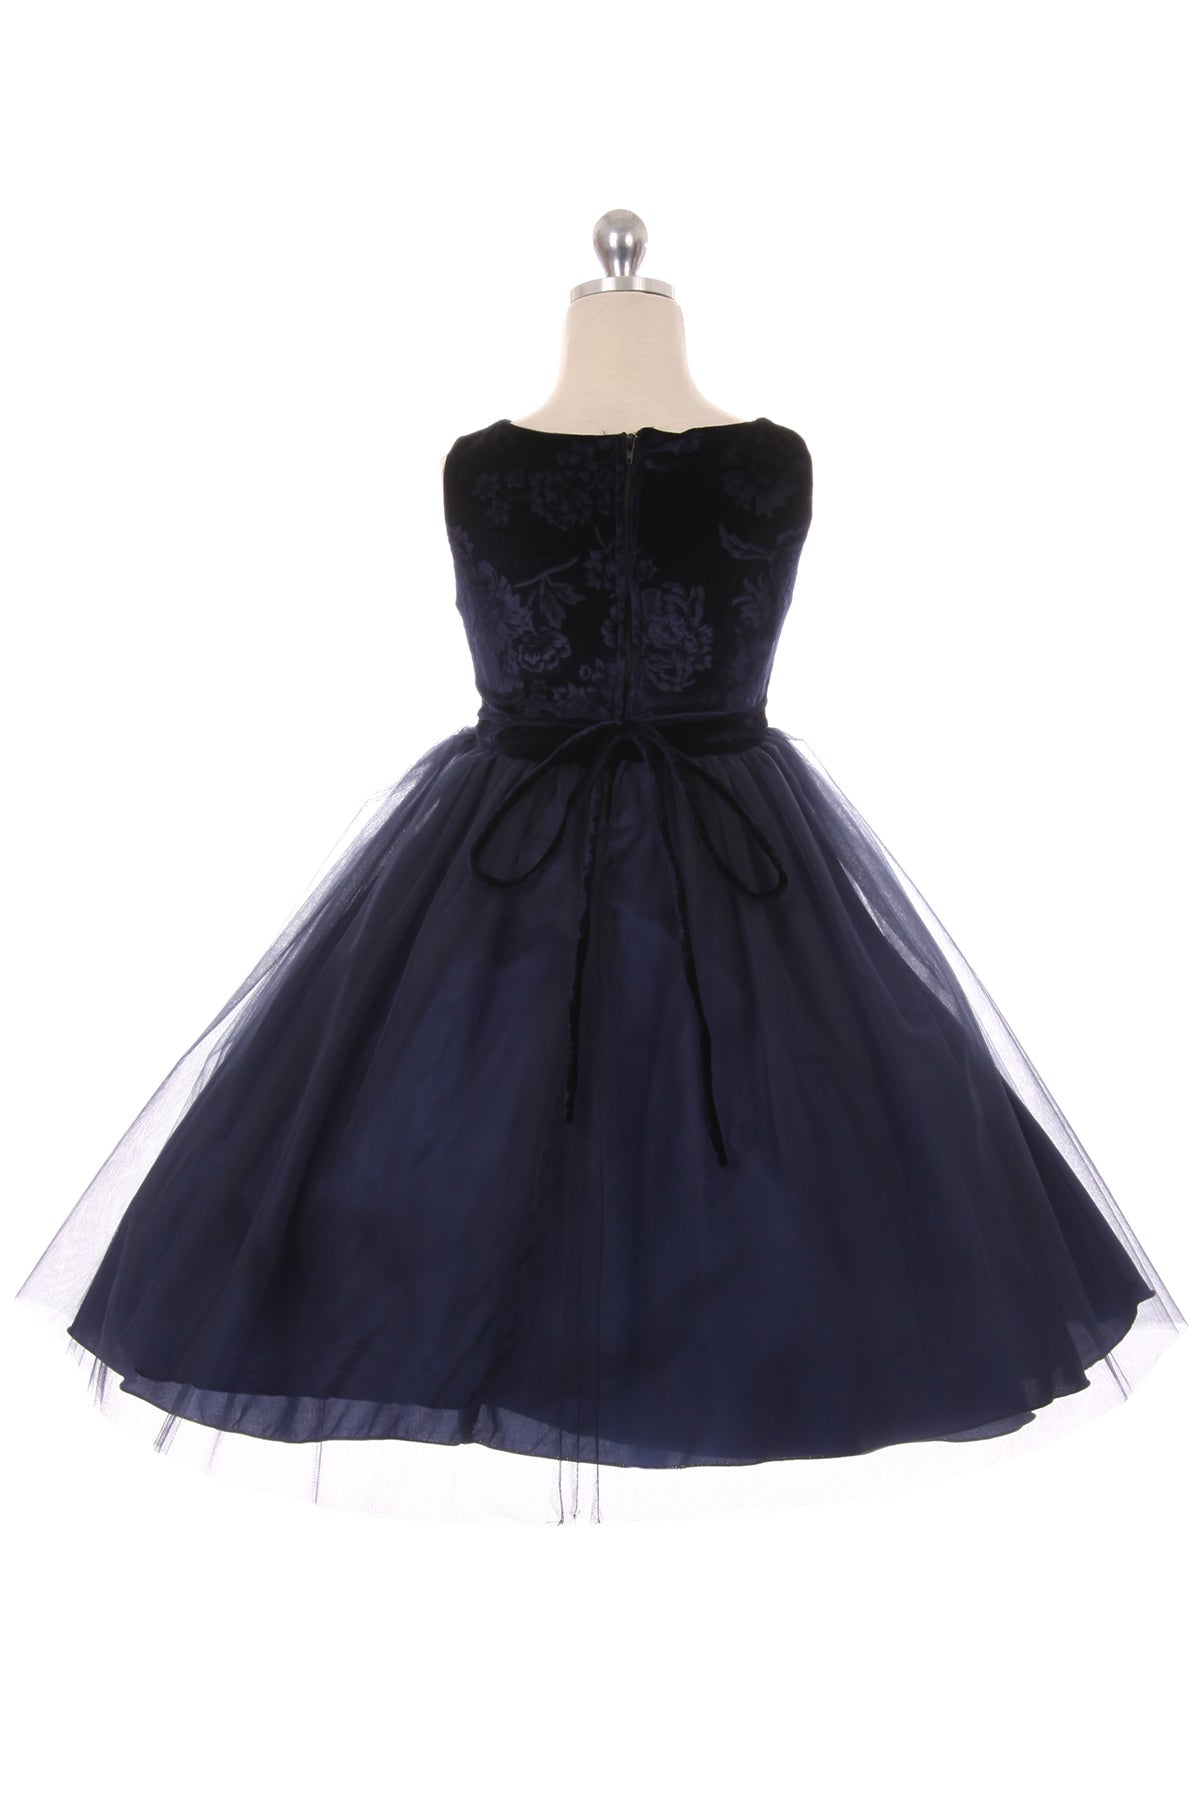 396- Velvet Rose Patch Girl Dress